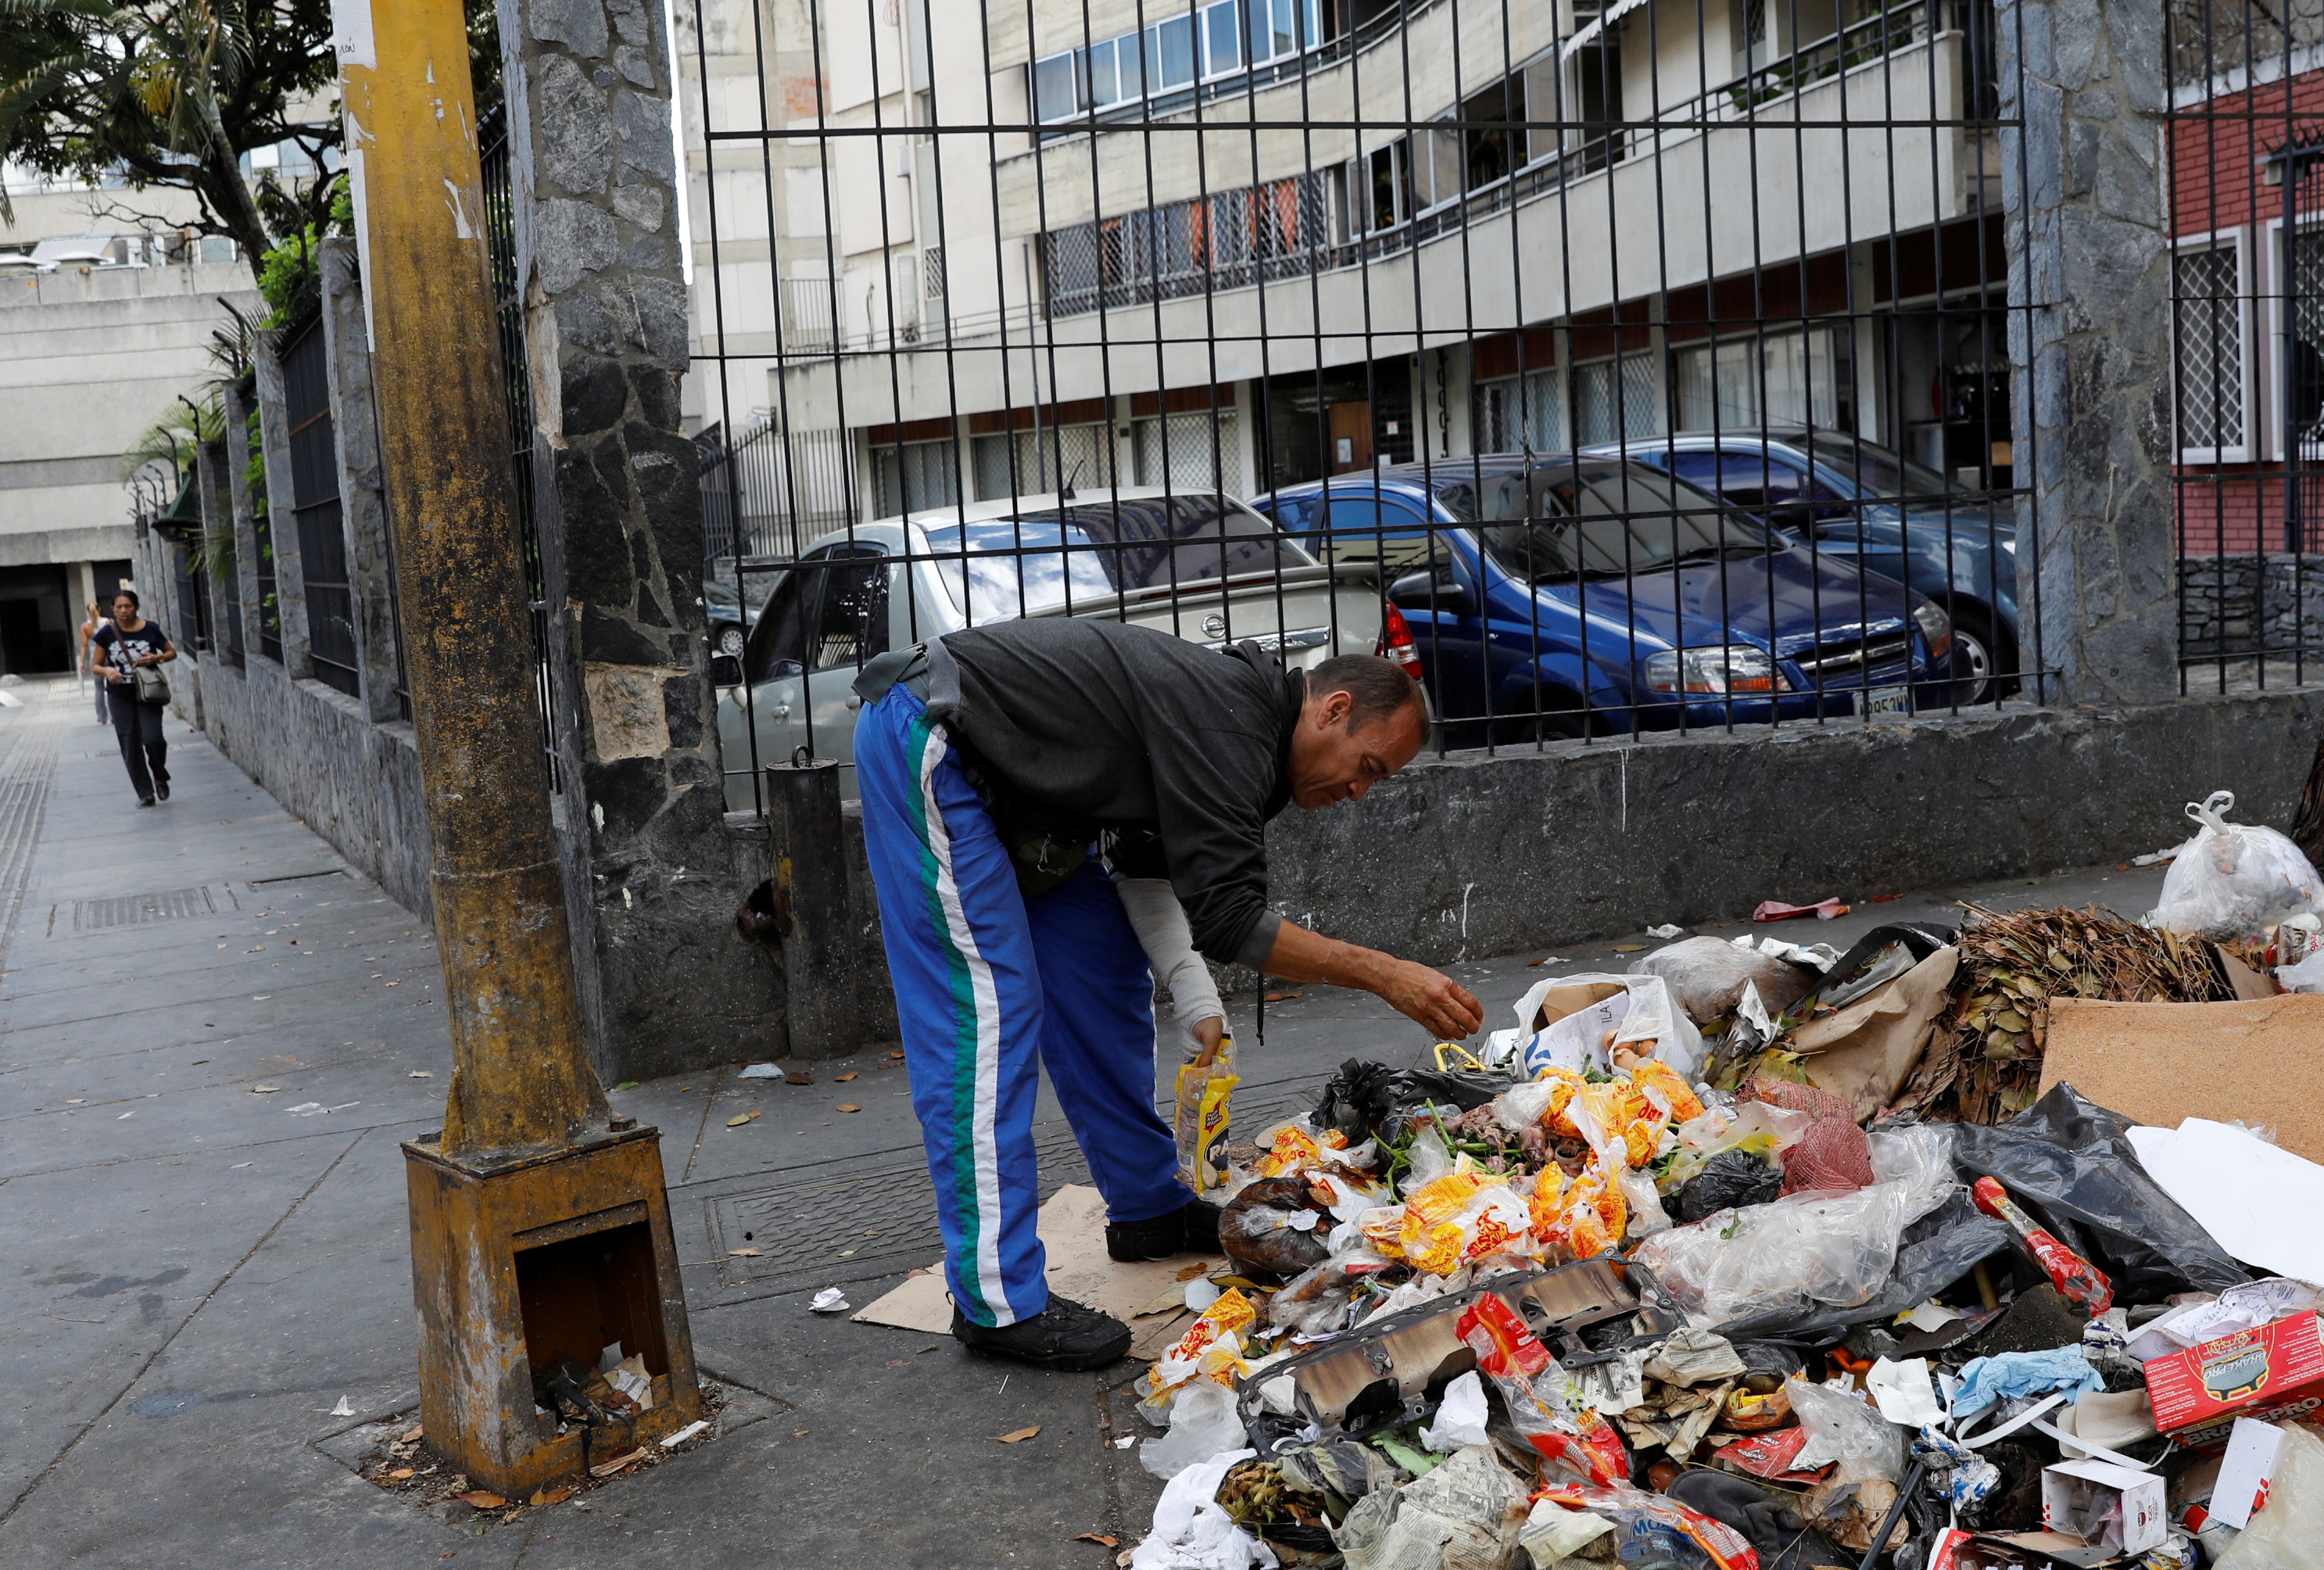 Los venezolanos siguen buscando comida en basureros para sobrevivir, según OVS